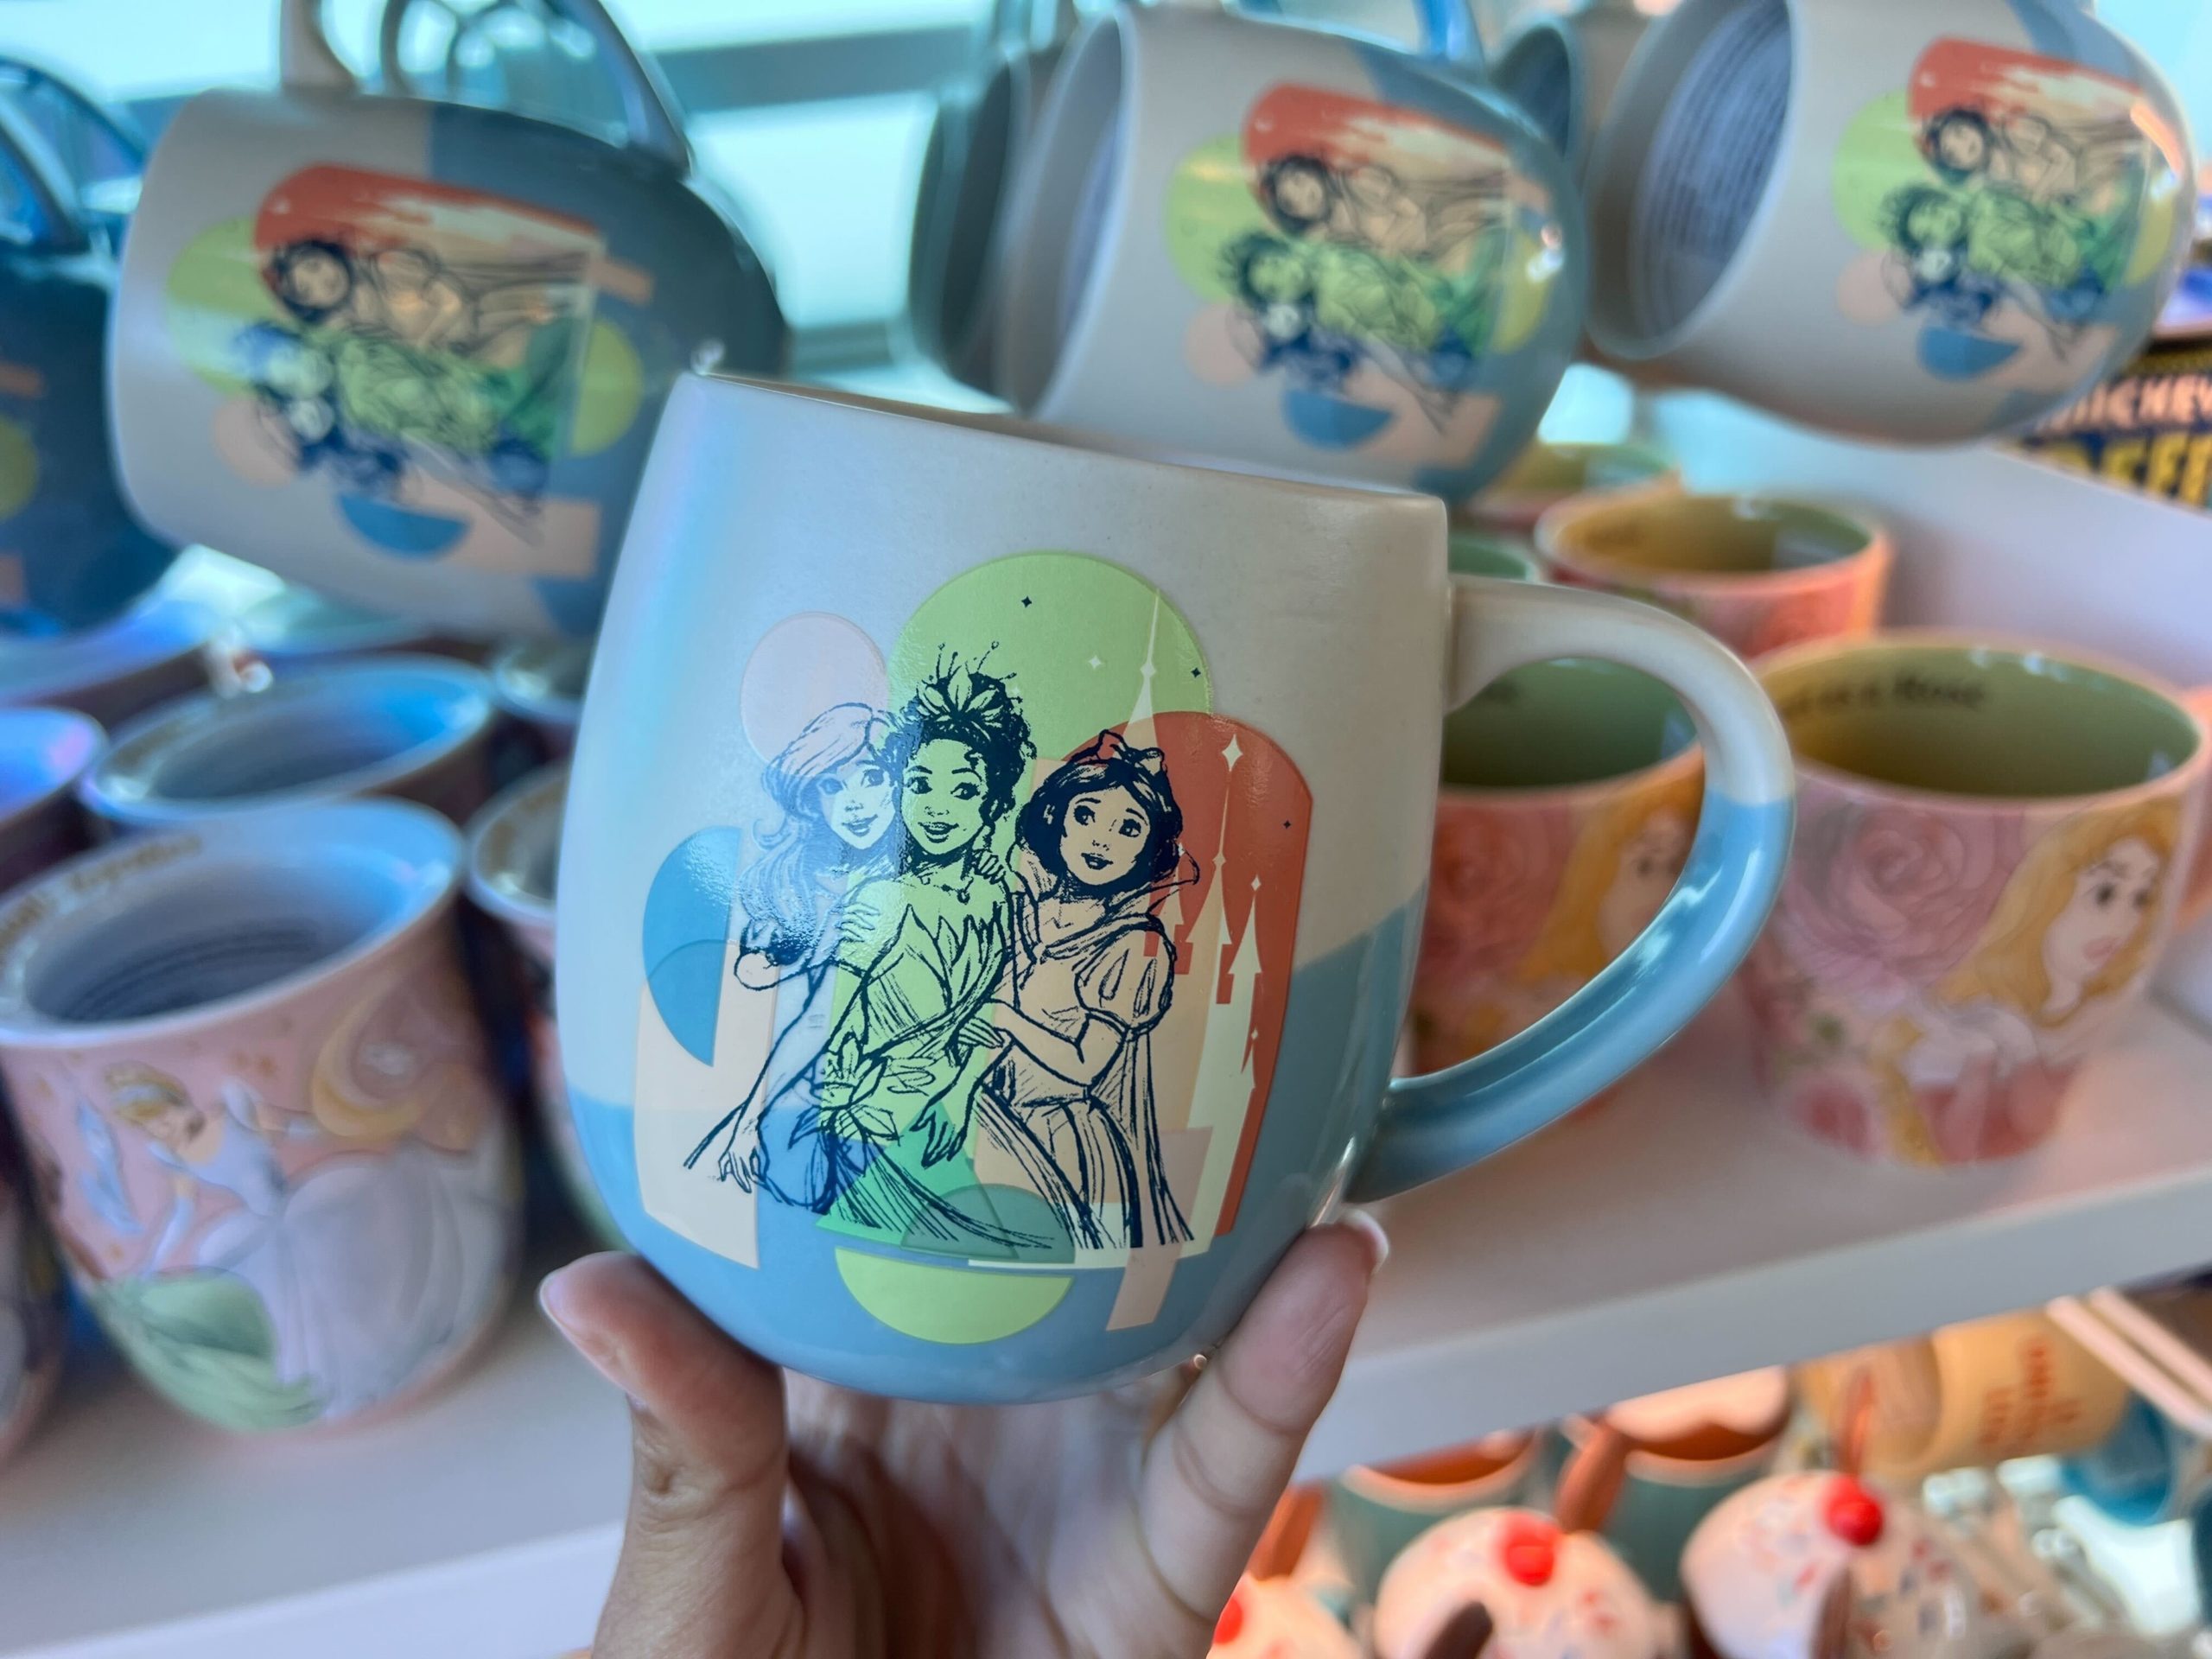 A RARE Princess Mug Has Arrived in Disney World!